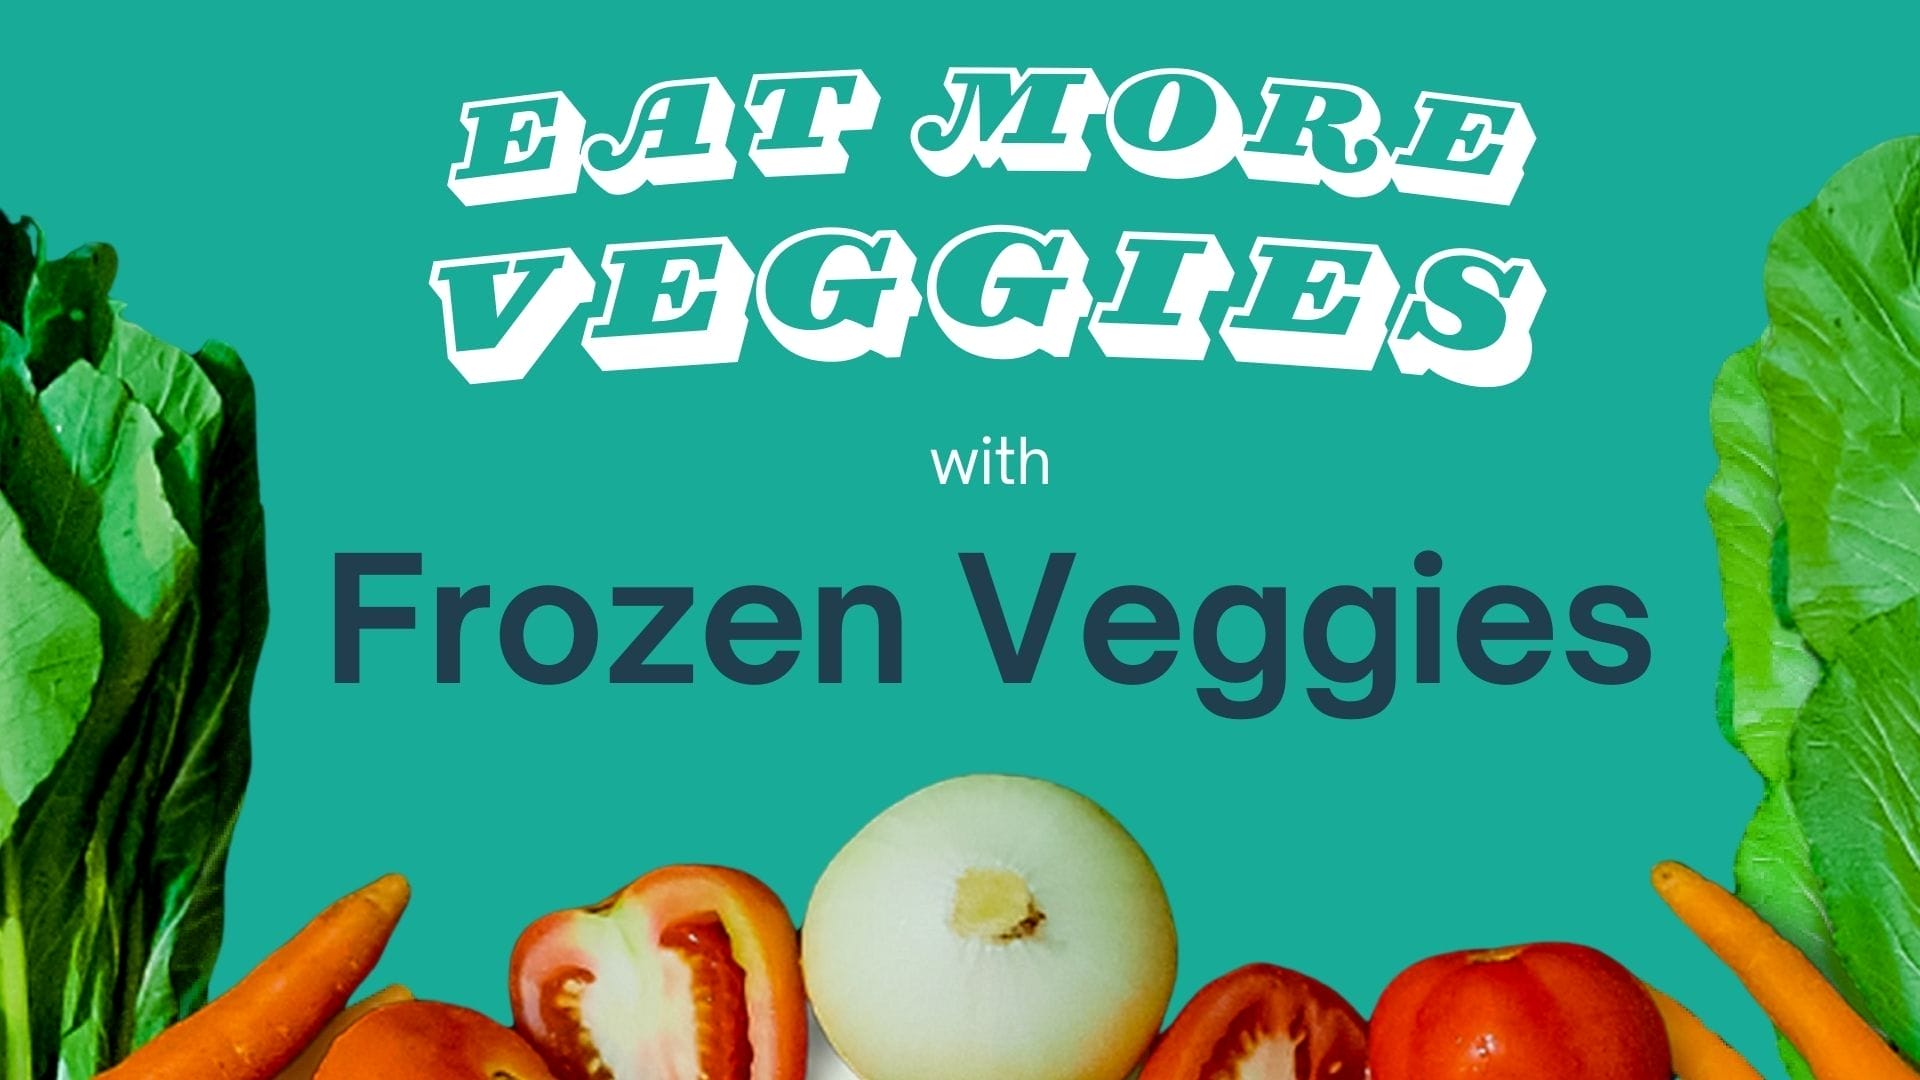 eat more veggies with frozen veggies slider